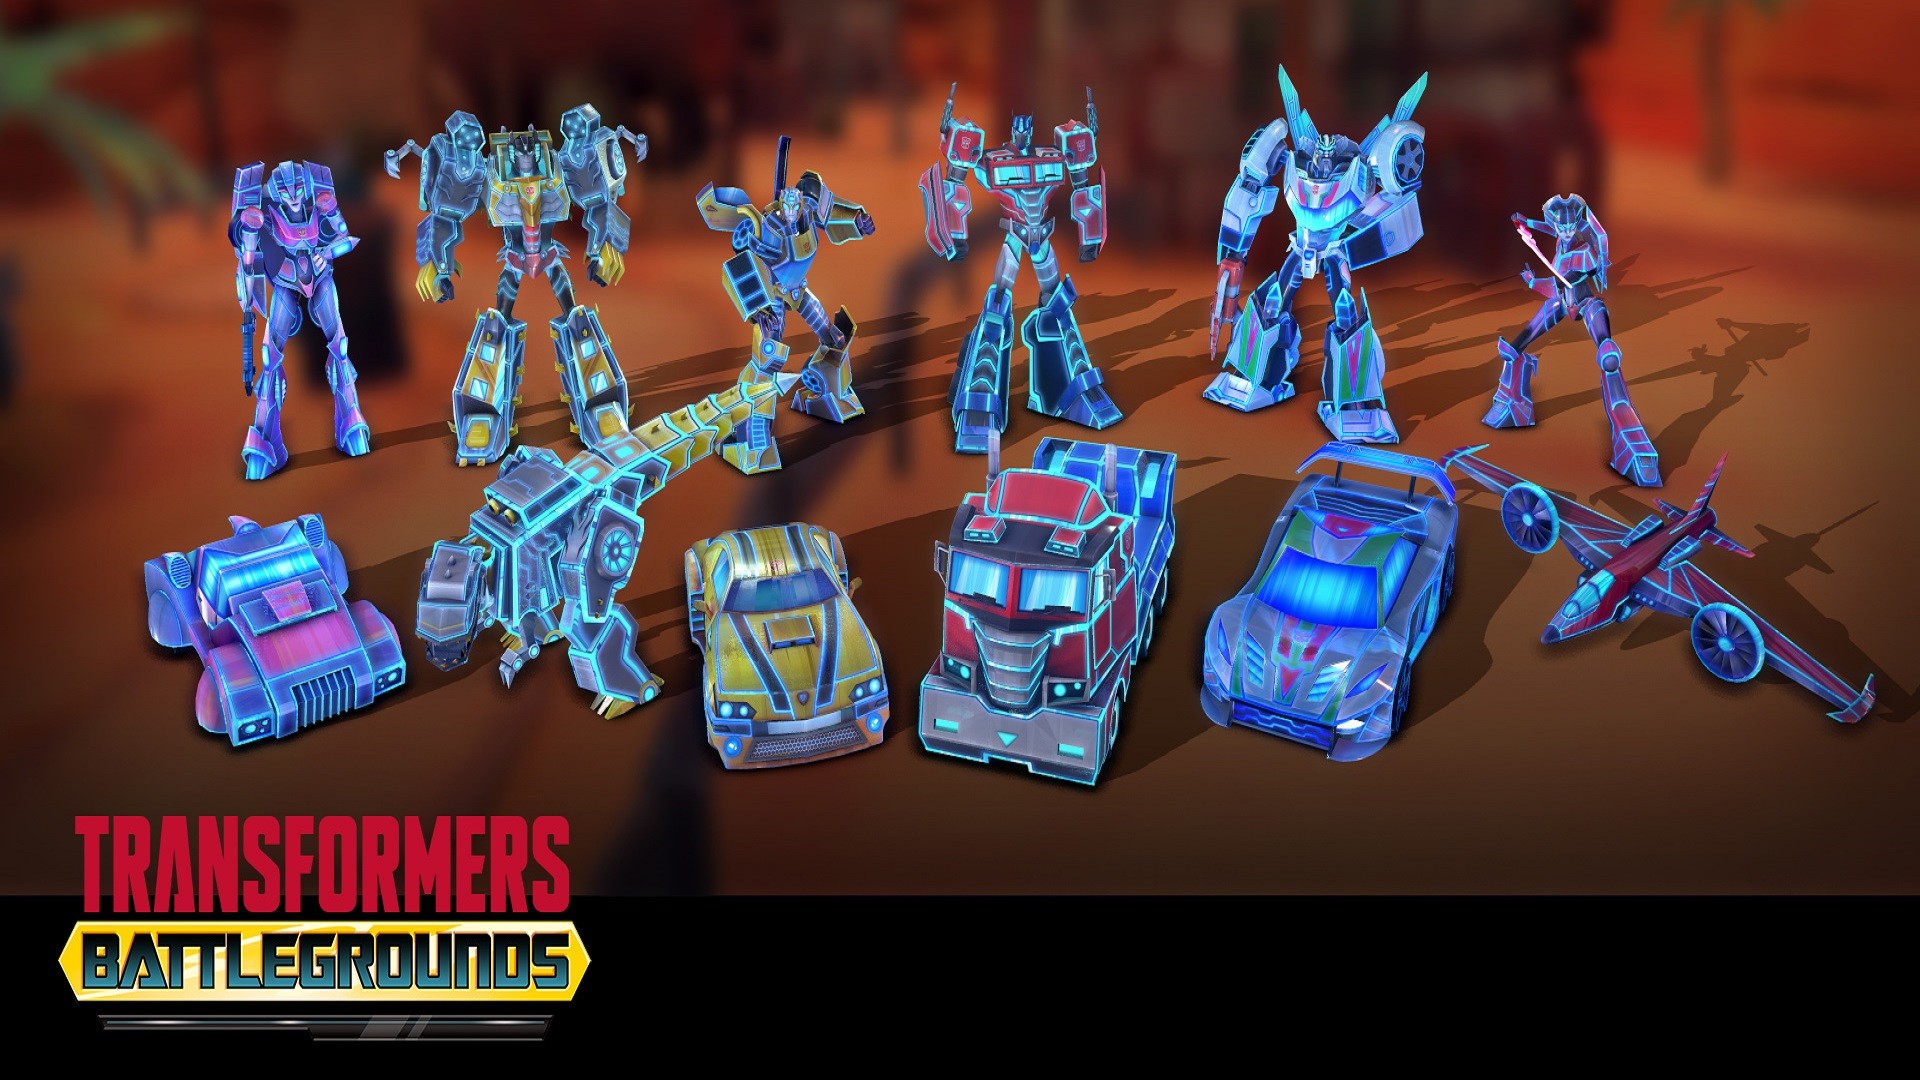 TRANSFORMERS: BATTLEGROUNDS - Energon Autobot Skin Pack Featured Screenshot #1